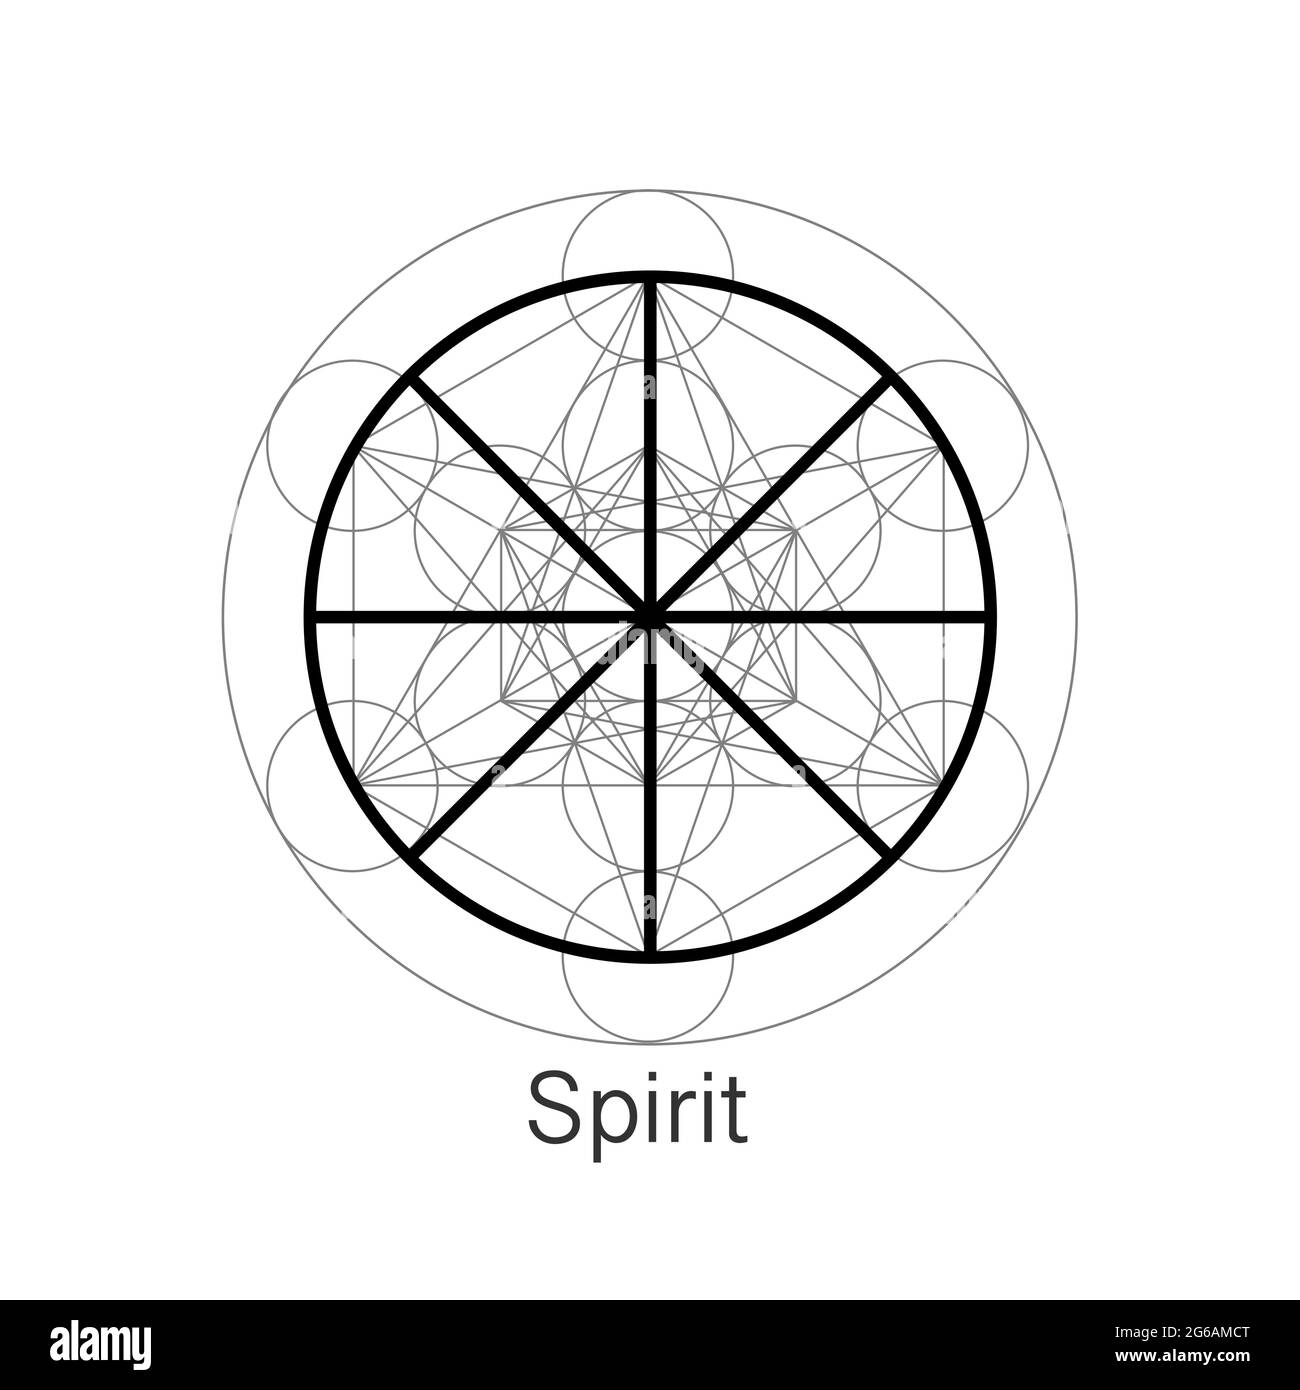 Symbole de l'esprit wicca alchimie icône, géométrie sacrée, logo magique conception du signe spirituel. Vecteur mandala isolé sur fond blanc Illustration de Vecteur